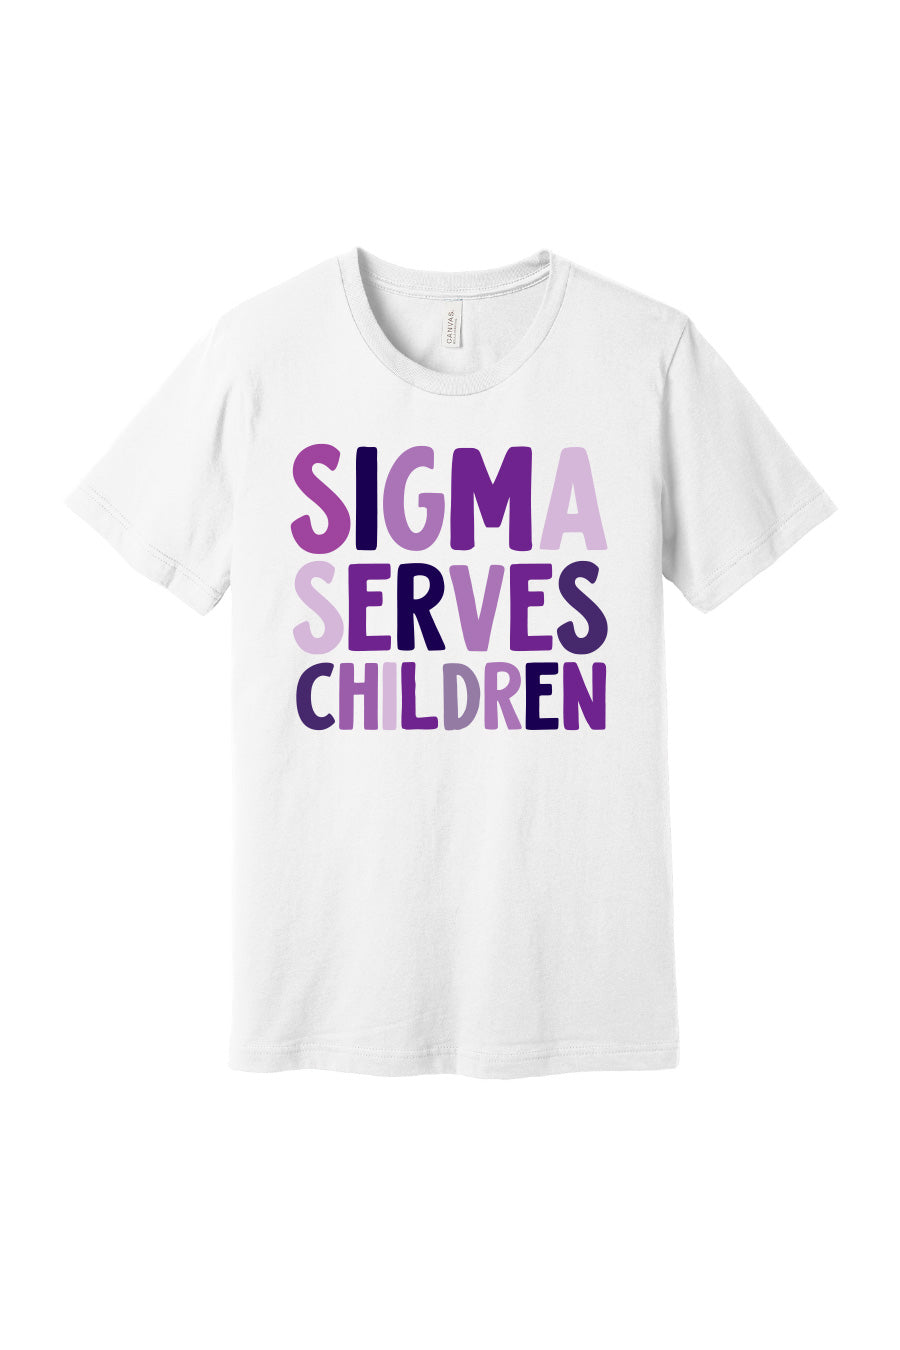 Sigma Serves Children Tee